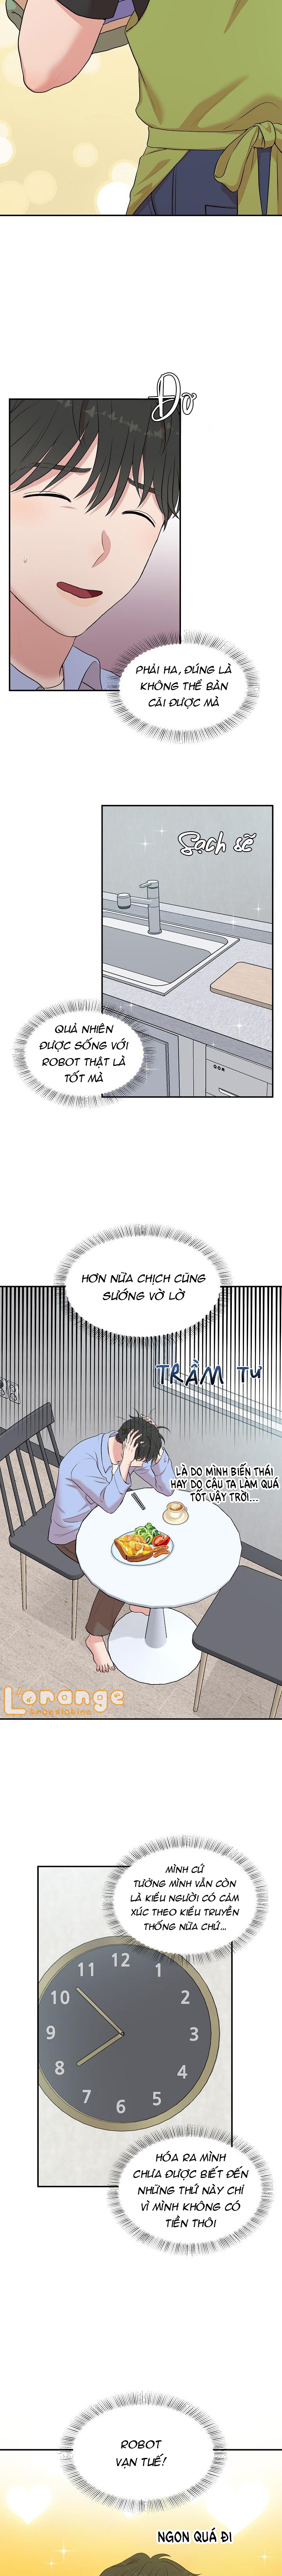 xin-chu-nhan-hay-khac-dau-chap-7-11